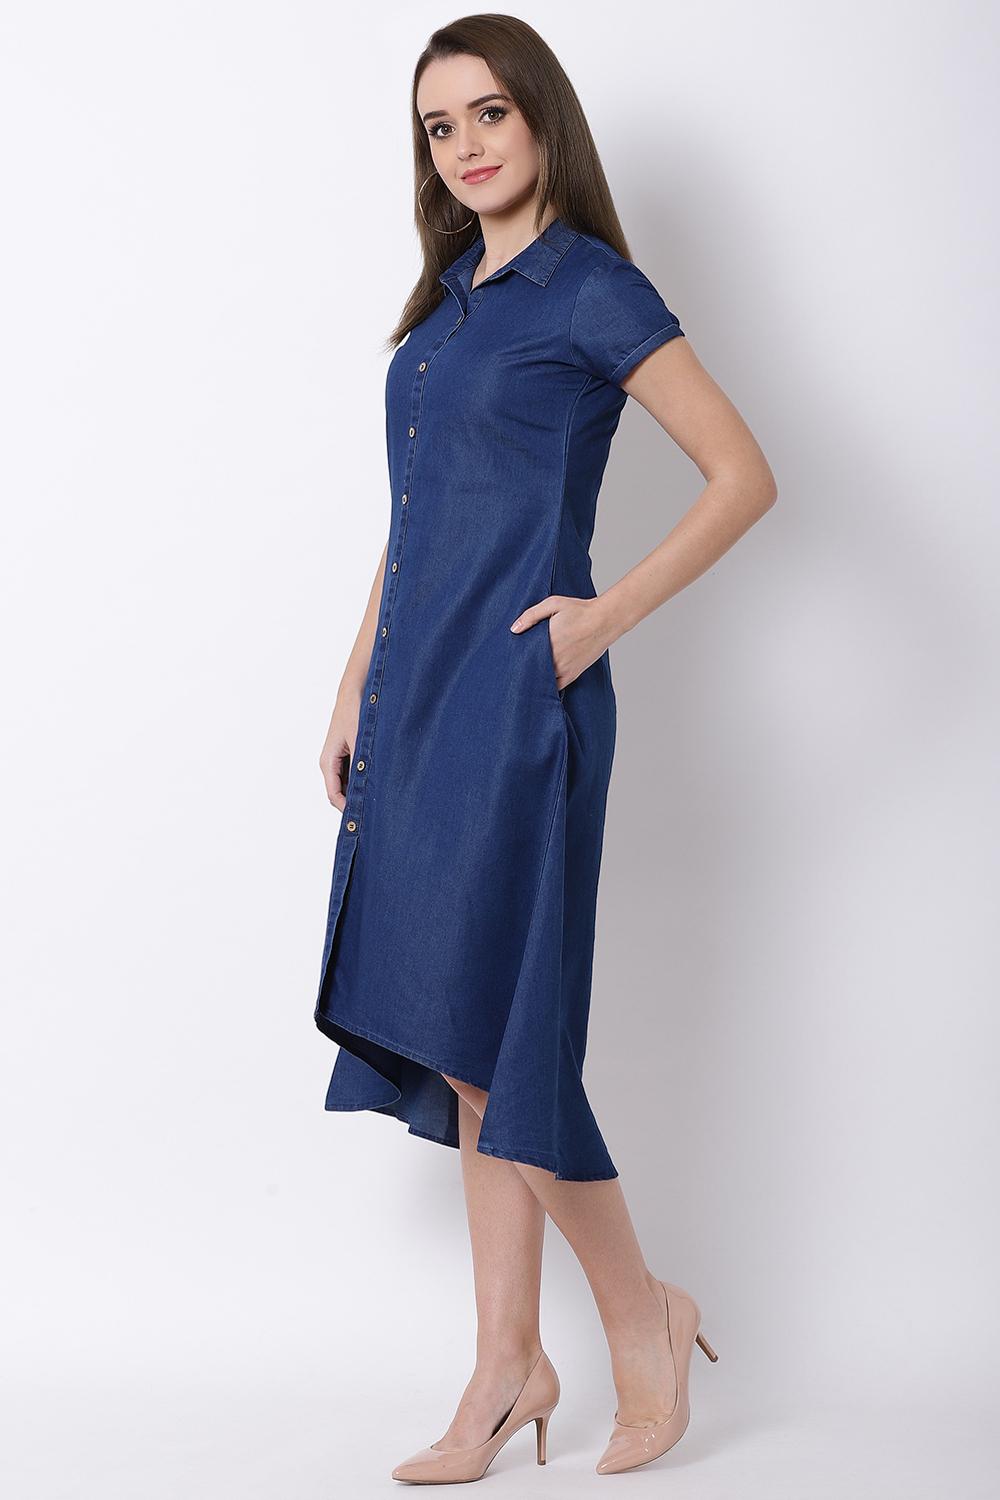 Denim Blue Cotton Asymmetric Dress